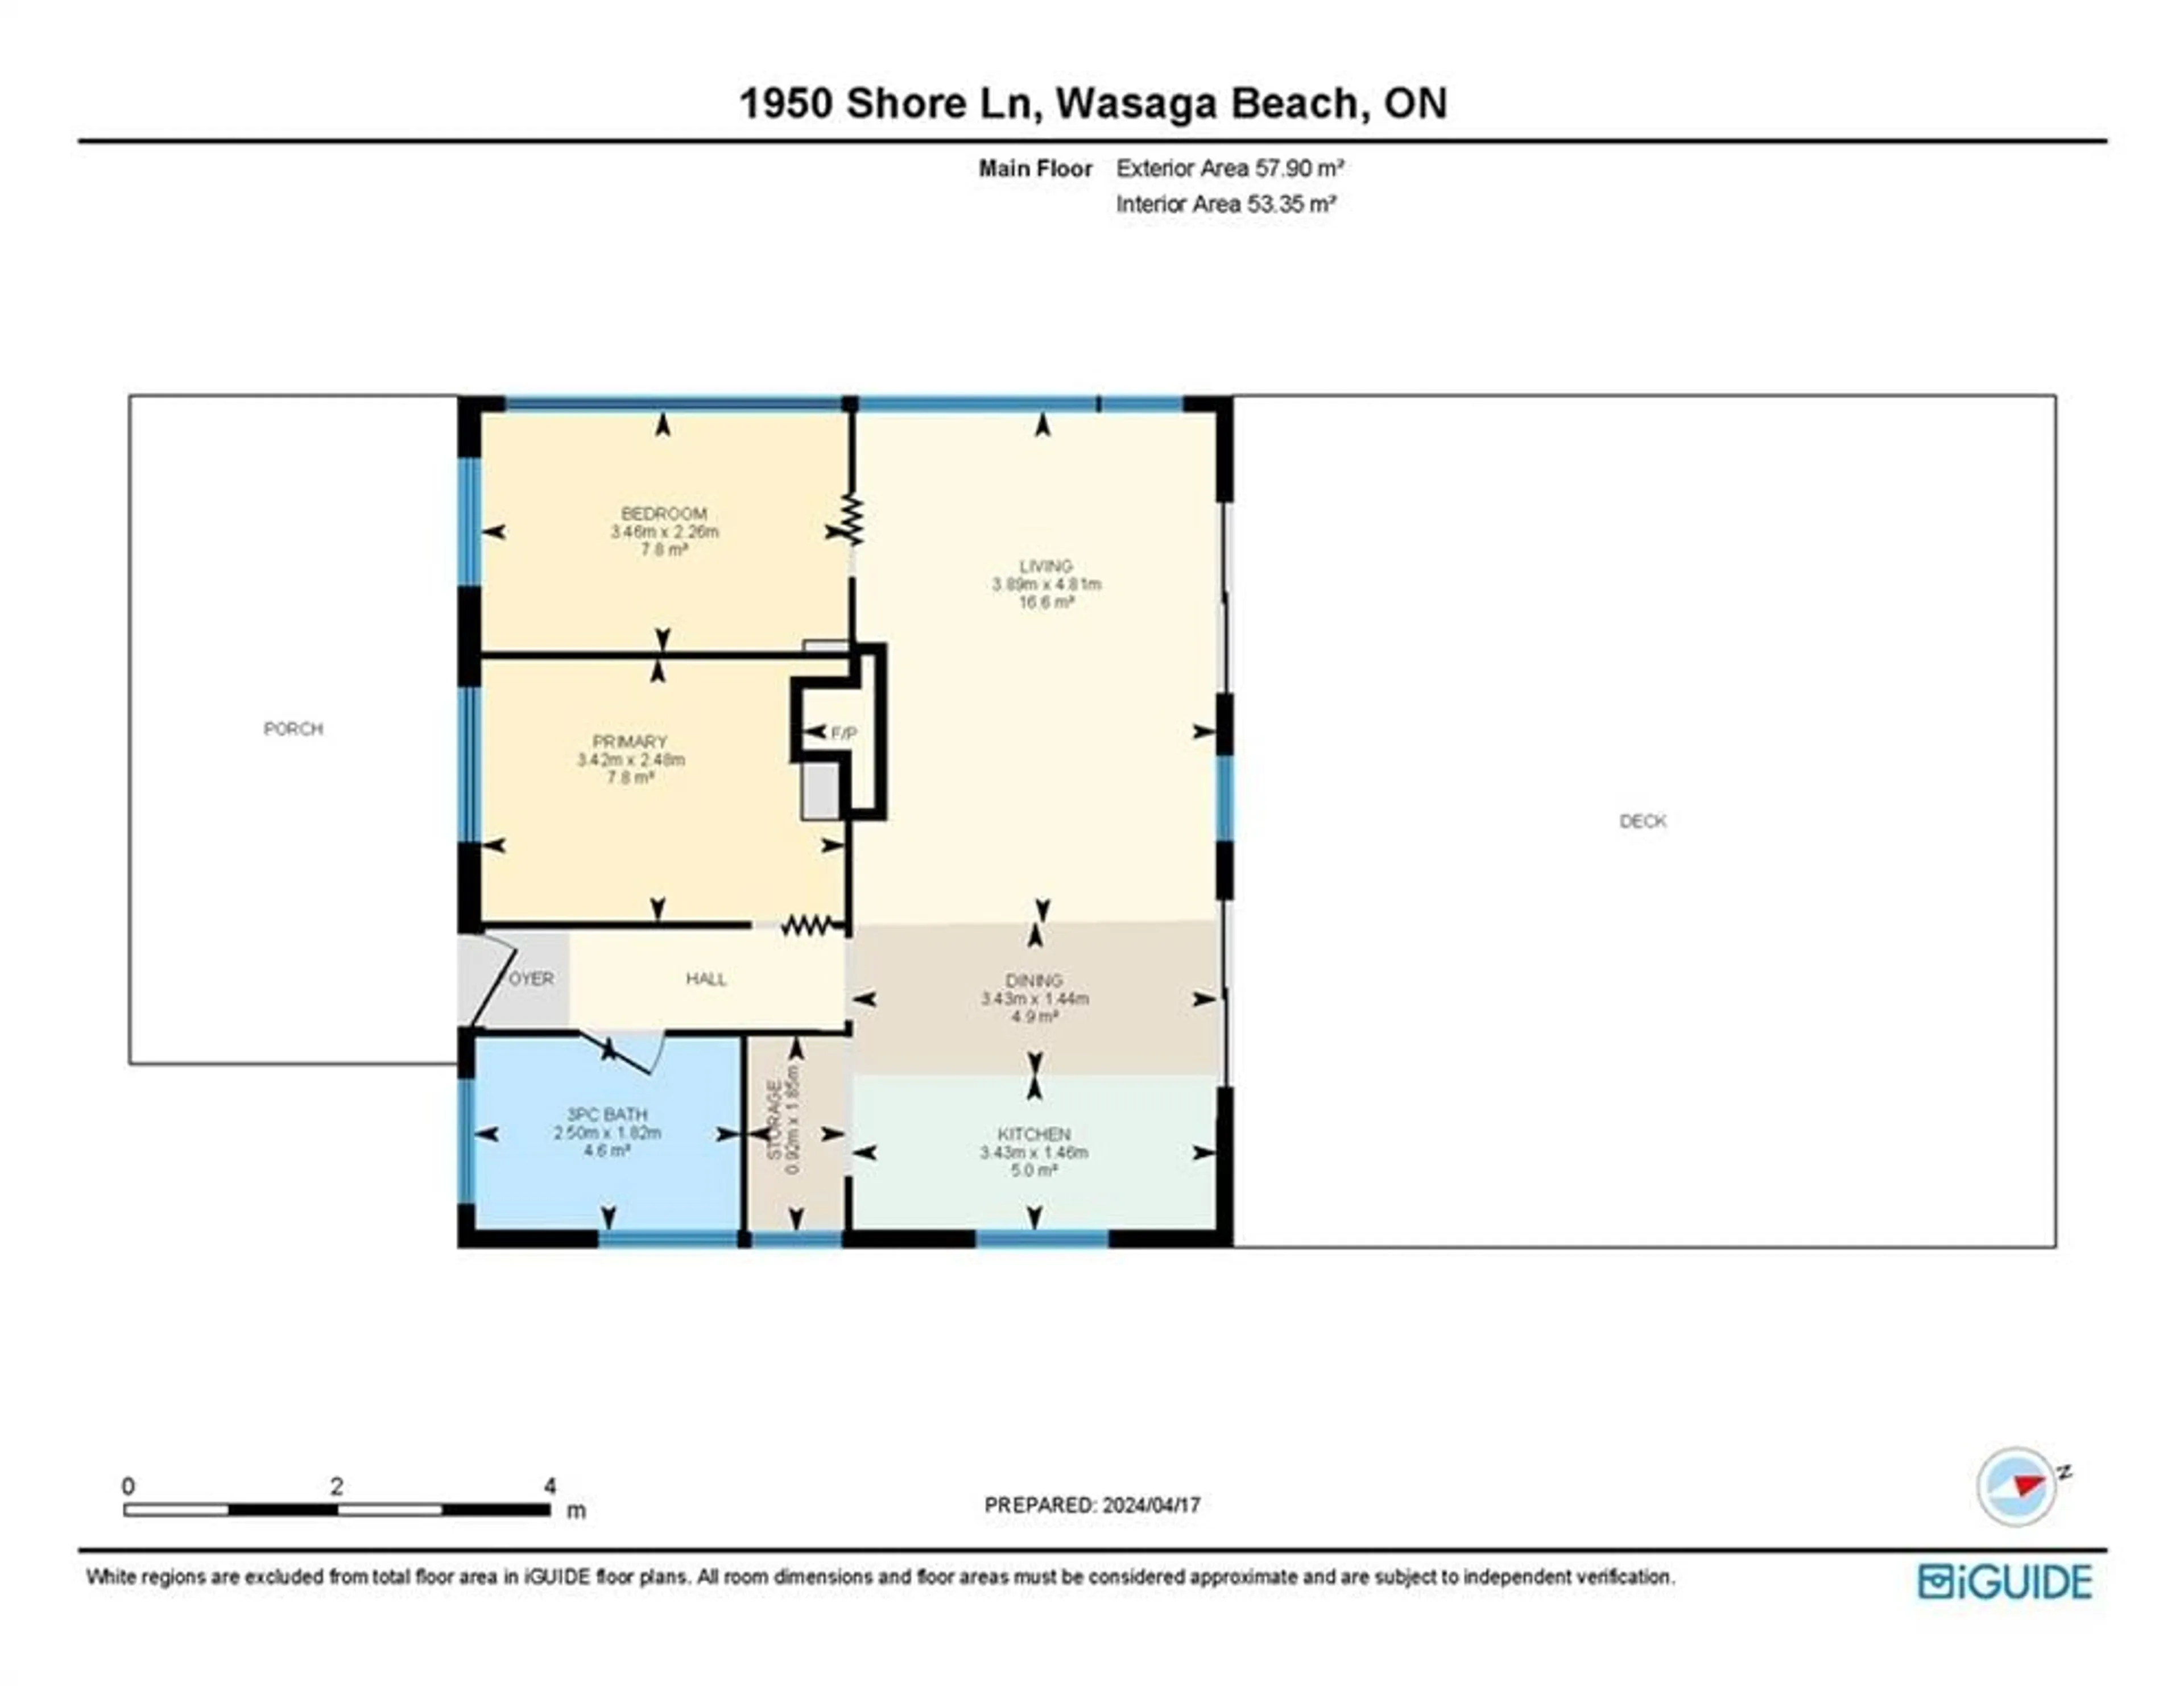 Floor plan for 1950 Shore Lane, Wasaga Beach Ontario L9Z 1T7